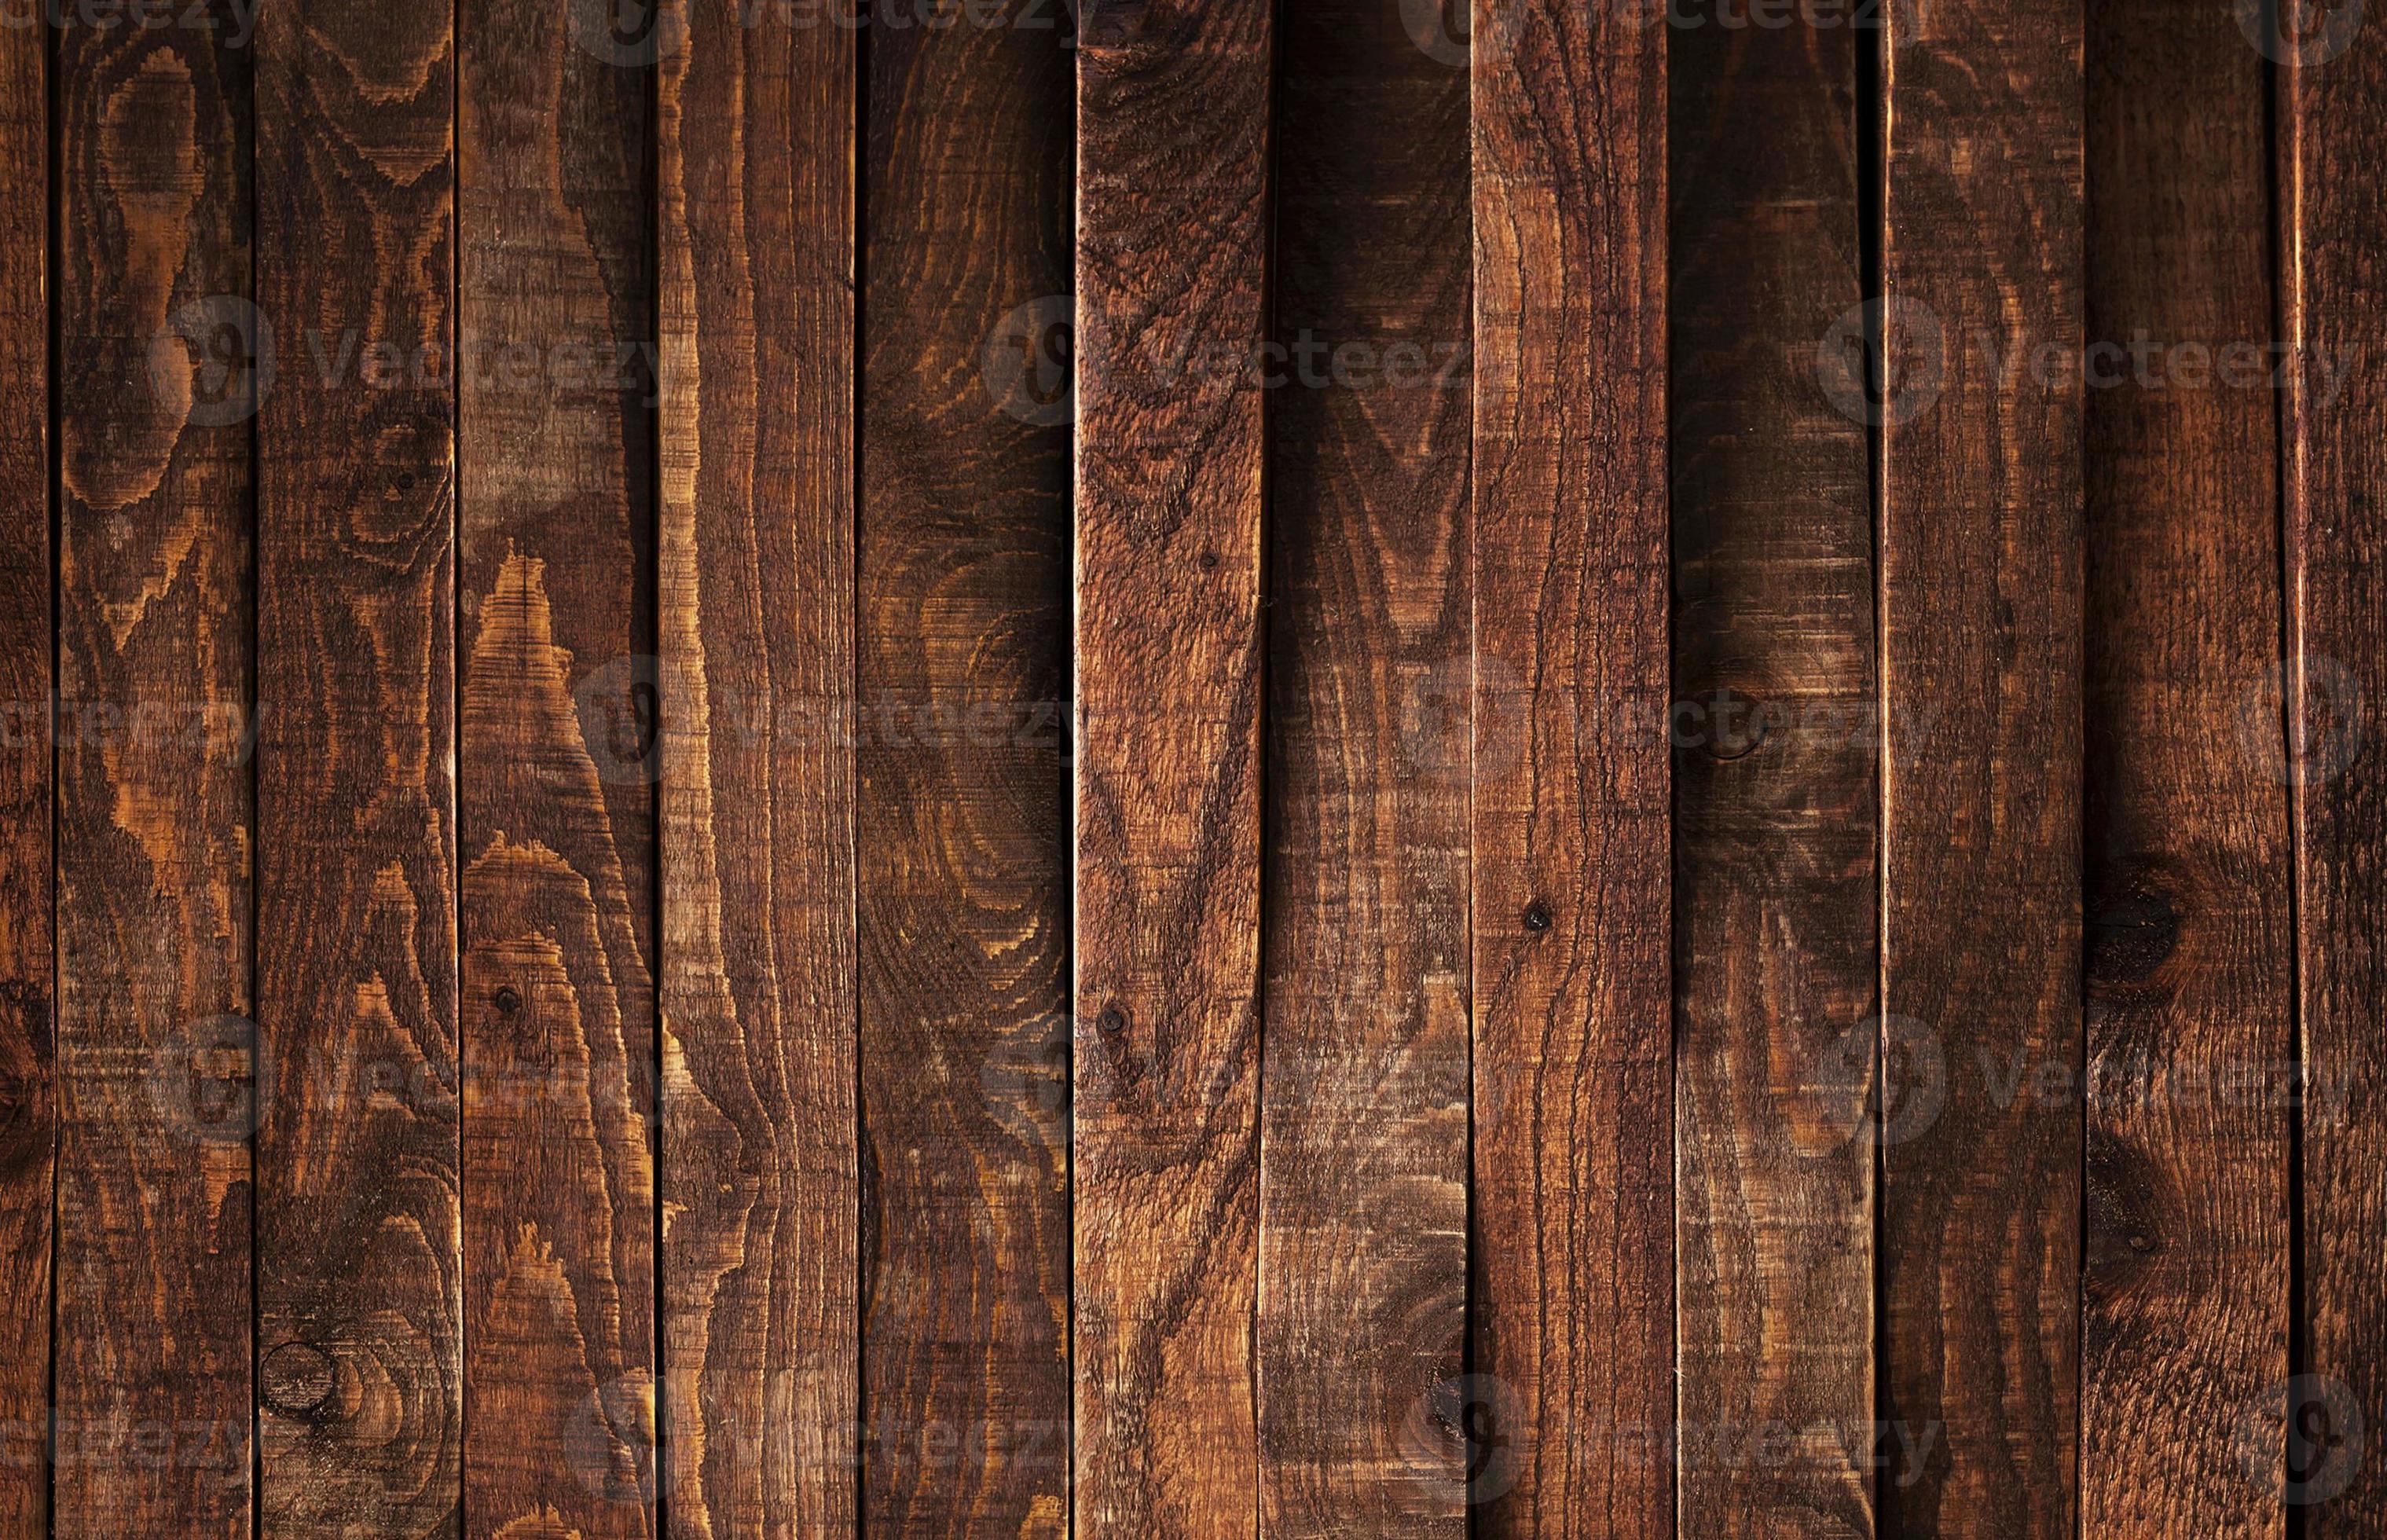 Gỗ: Với độ bền và tính thẩm mỹ cao, sản phẩm từ gỗ đem đến vẻ đẹp tự nhiên cho ngôi nhà của bạn. Xem hình ảnh liên quan để cảm nhận sức hút của không gian sử dụng gỗ và nâng cao cảm xúc sống động cho ngôi nhà của bạn.